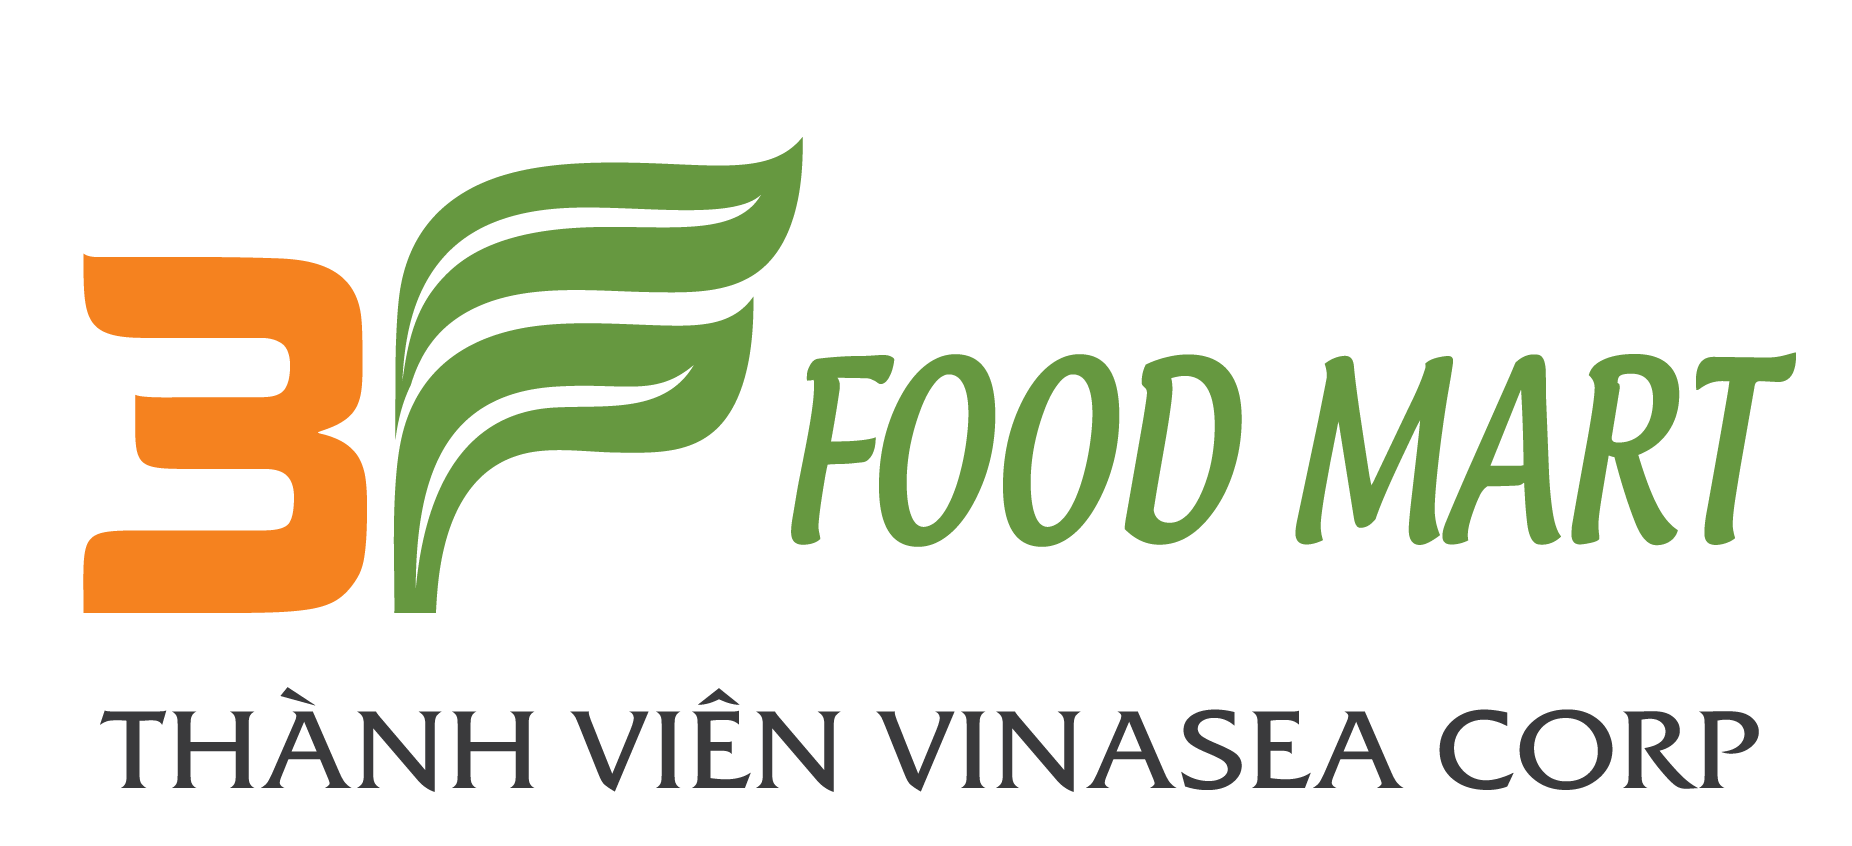 3F Food Mart / Cty CP Thực Phẩm Biển Việt